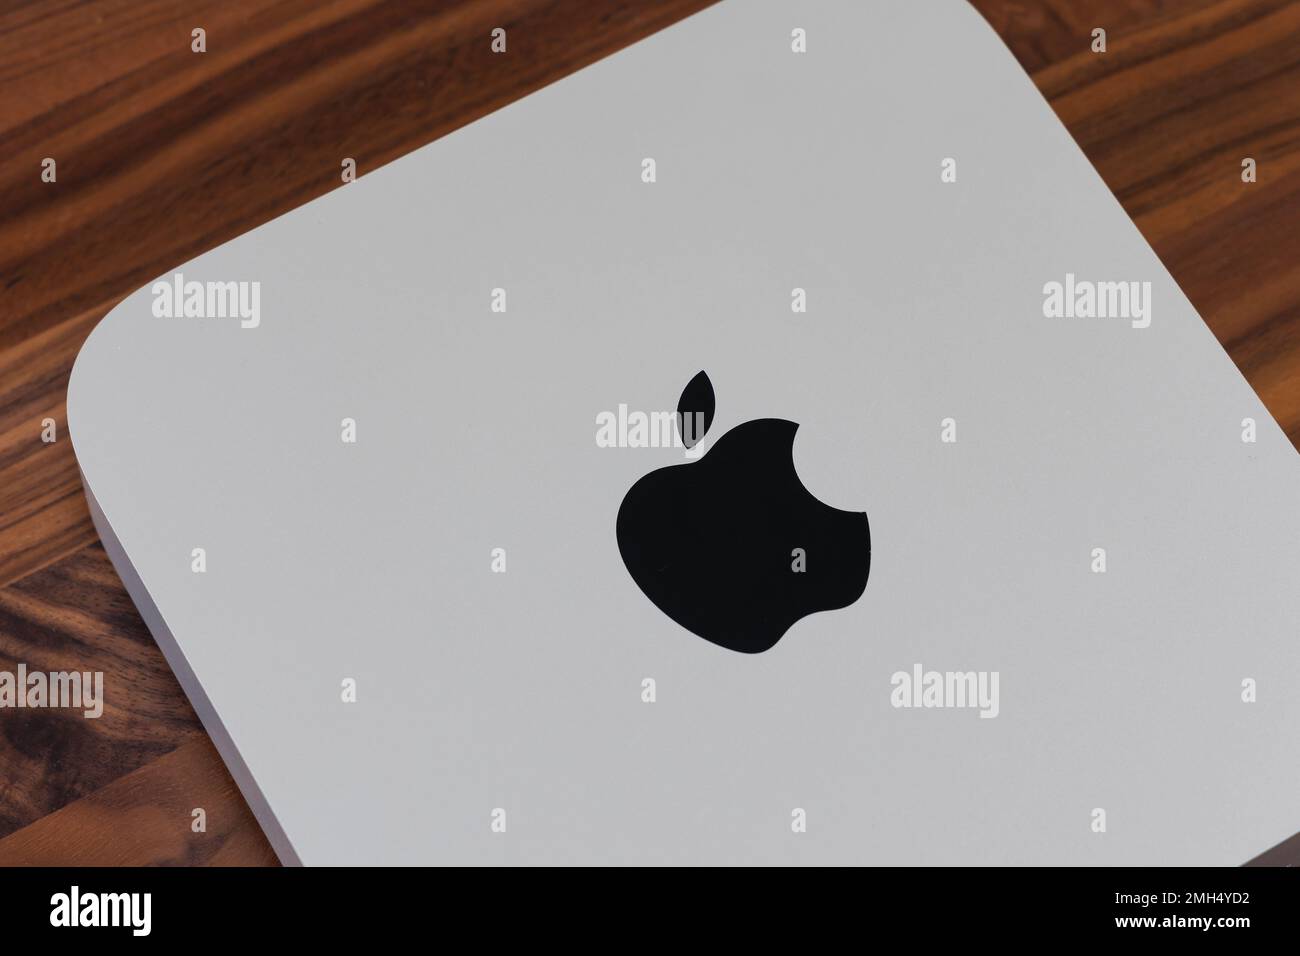 LONDON - 24. JANUAR 2023: Apple Mac Mini Computer mit Logo Draufsicht auf Holz Büroschreibtisch Hintergrund Stockfoto